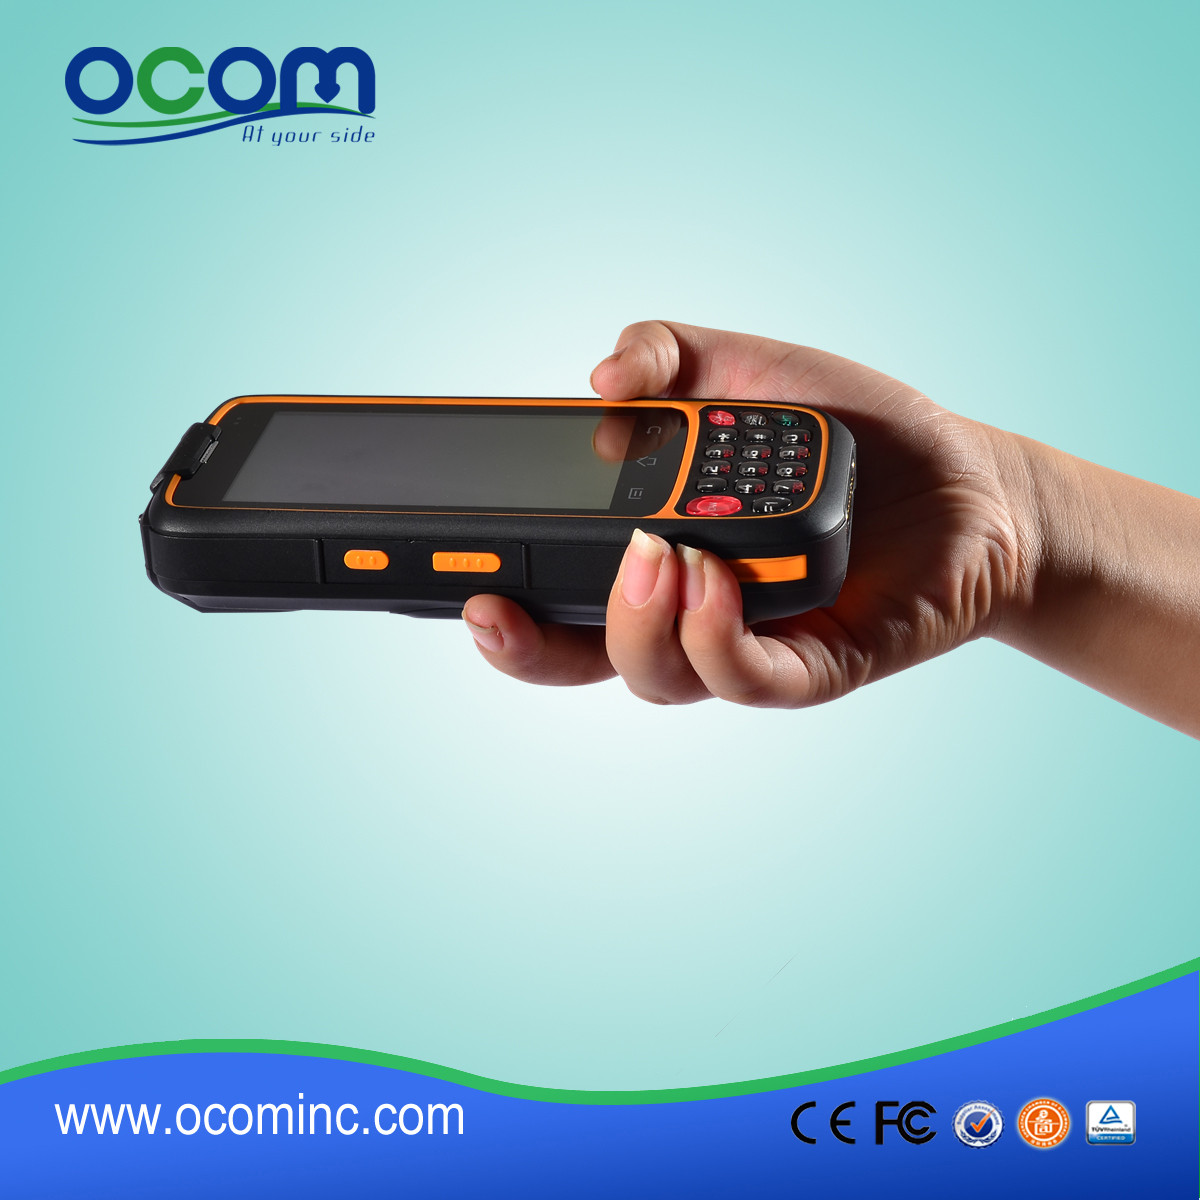 OCBS-D7000 --- Chiny gorące sprzedaży duży ekran PDA przemysłowego systemu Android